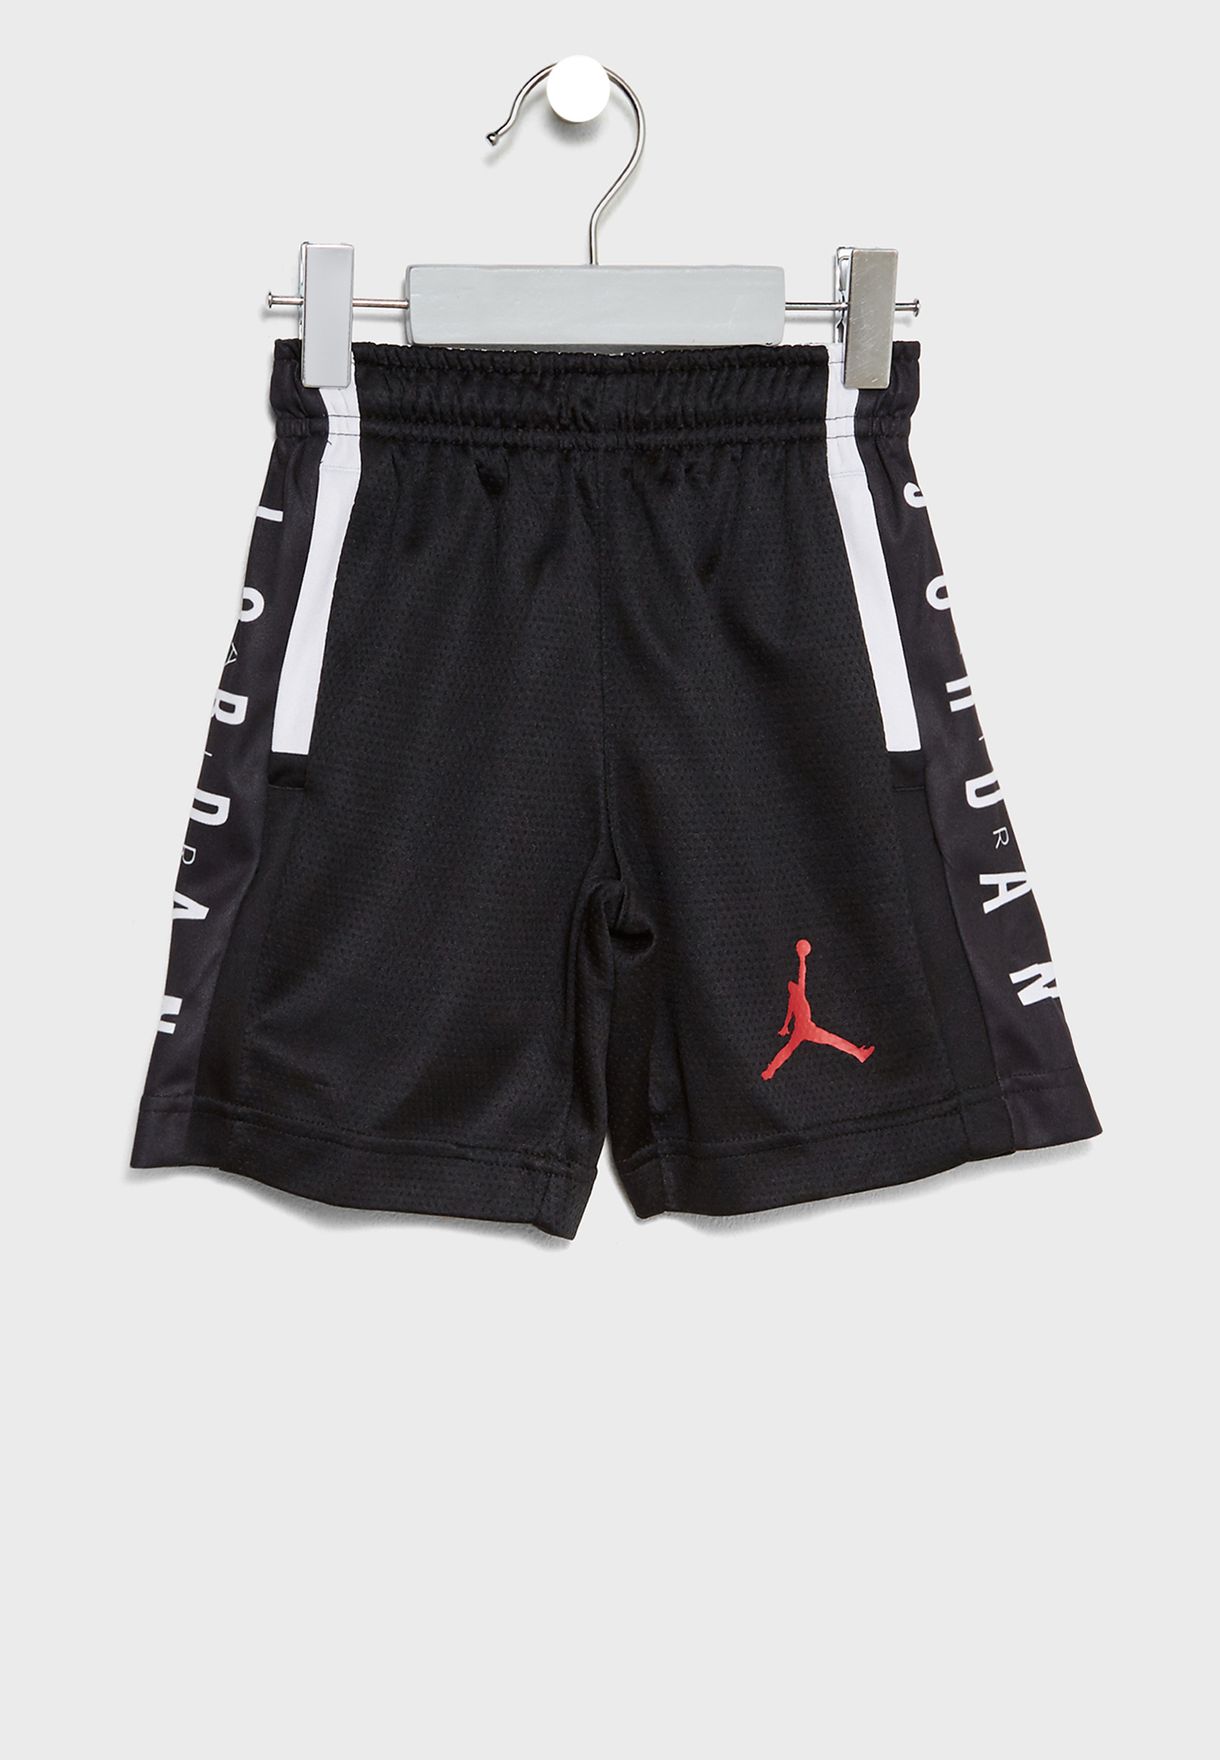 boys air jordan shorts